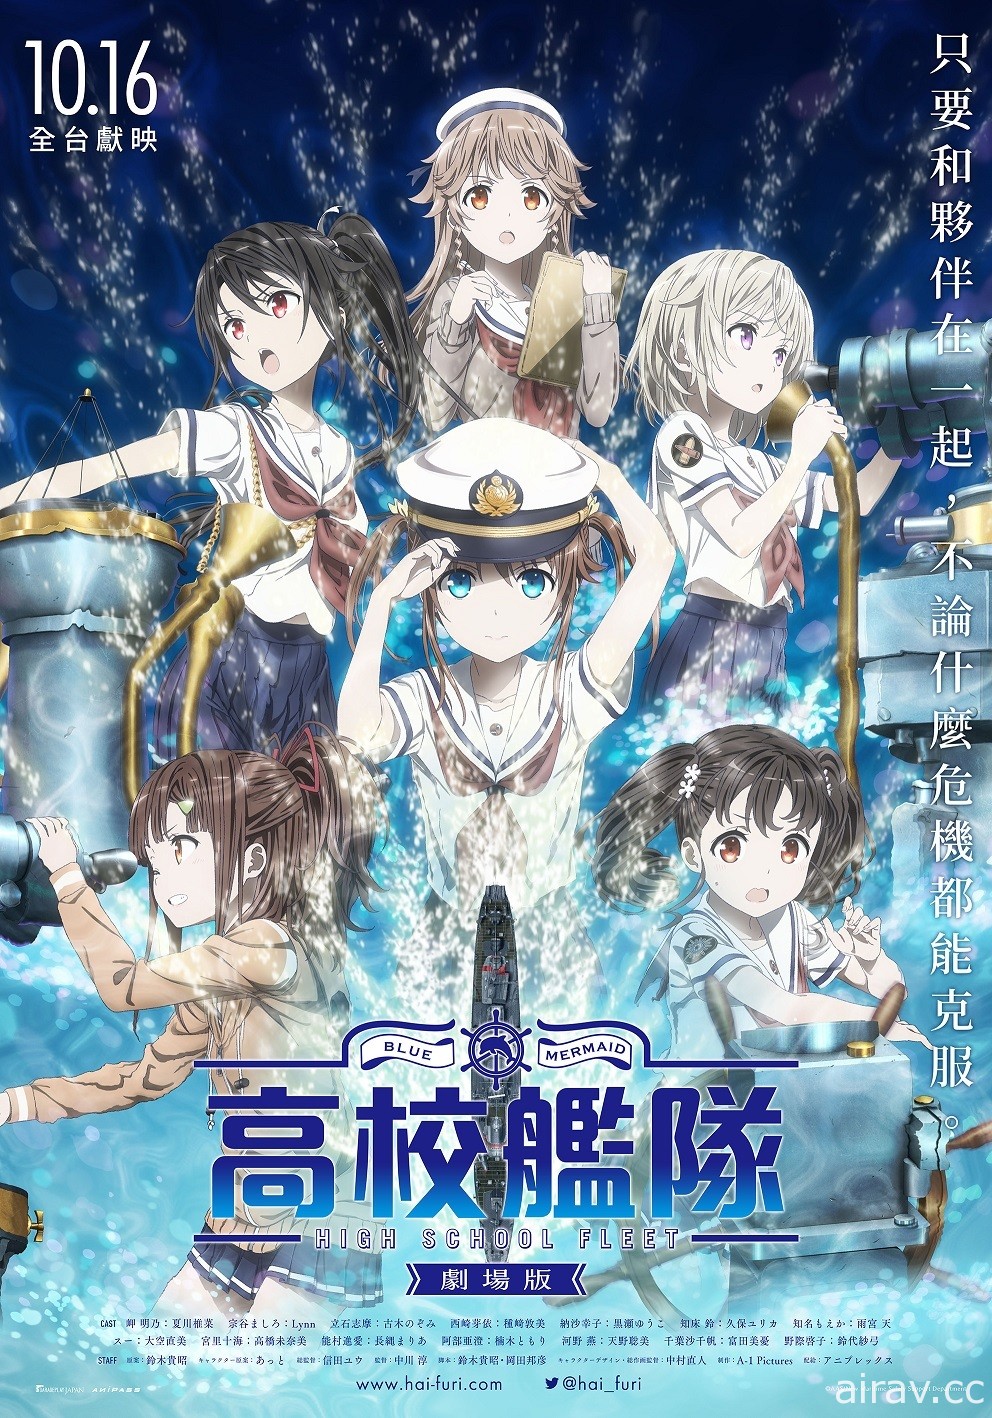 《剧场版 高校舰队》宣布 10 月 16 日在台上映 中文预告及海报率先公开